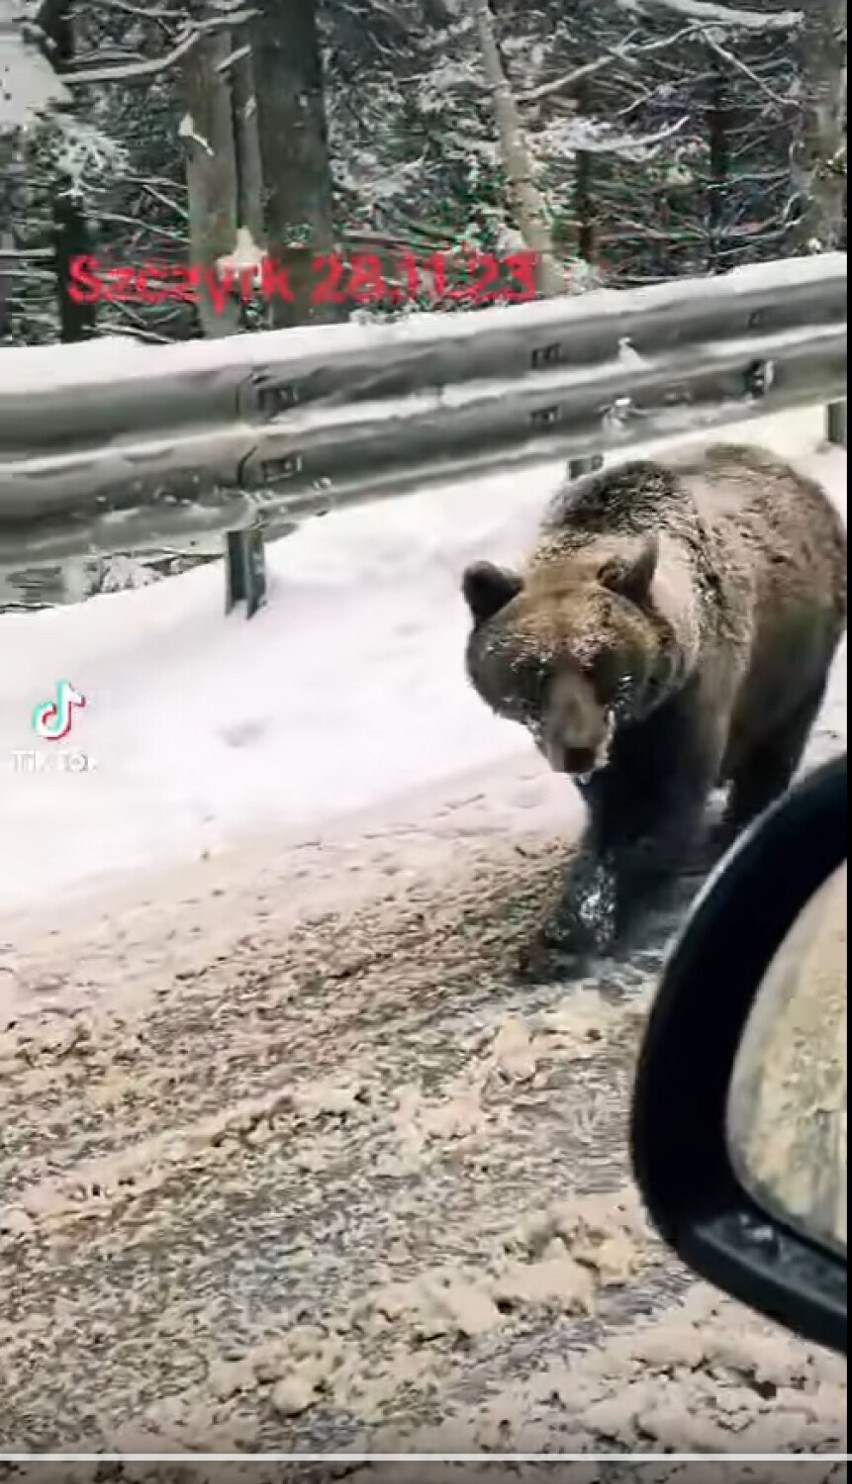 Niedźwiedzie  w Szczyrku? To wideo zrobiło furorę w internecie, ale nie wszystko jest tutaj takie proste!